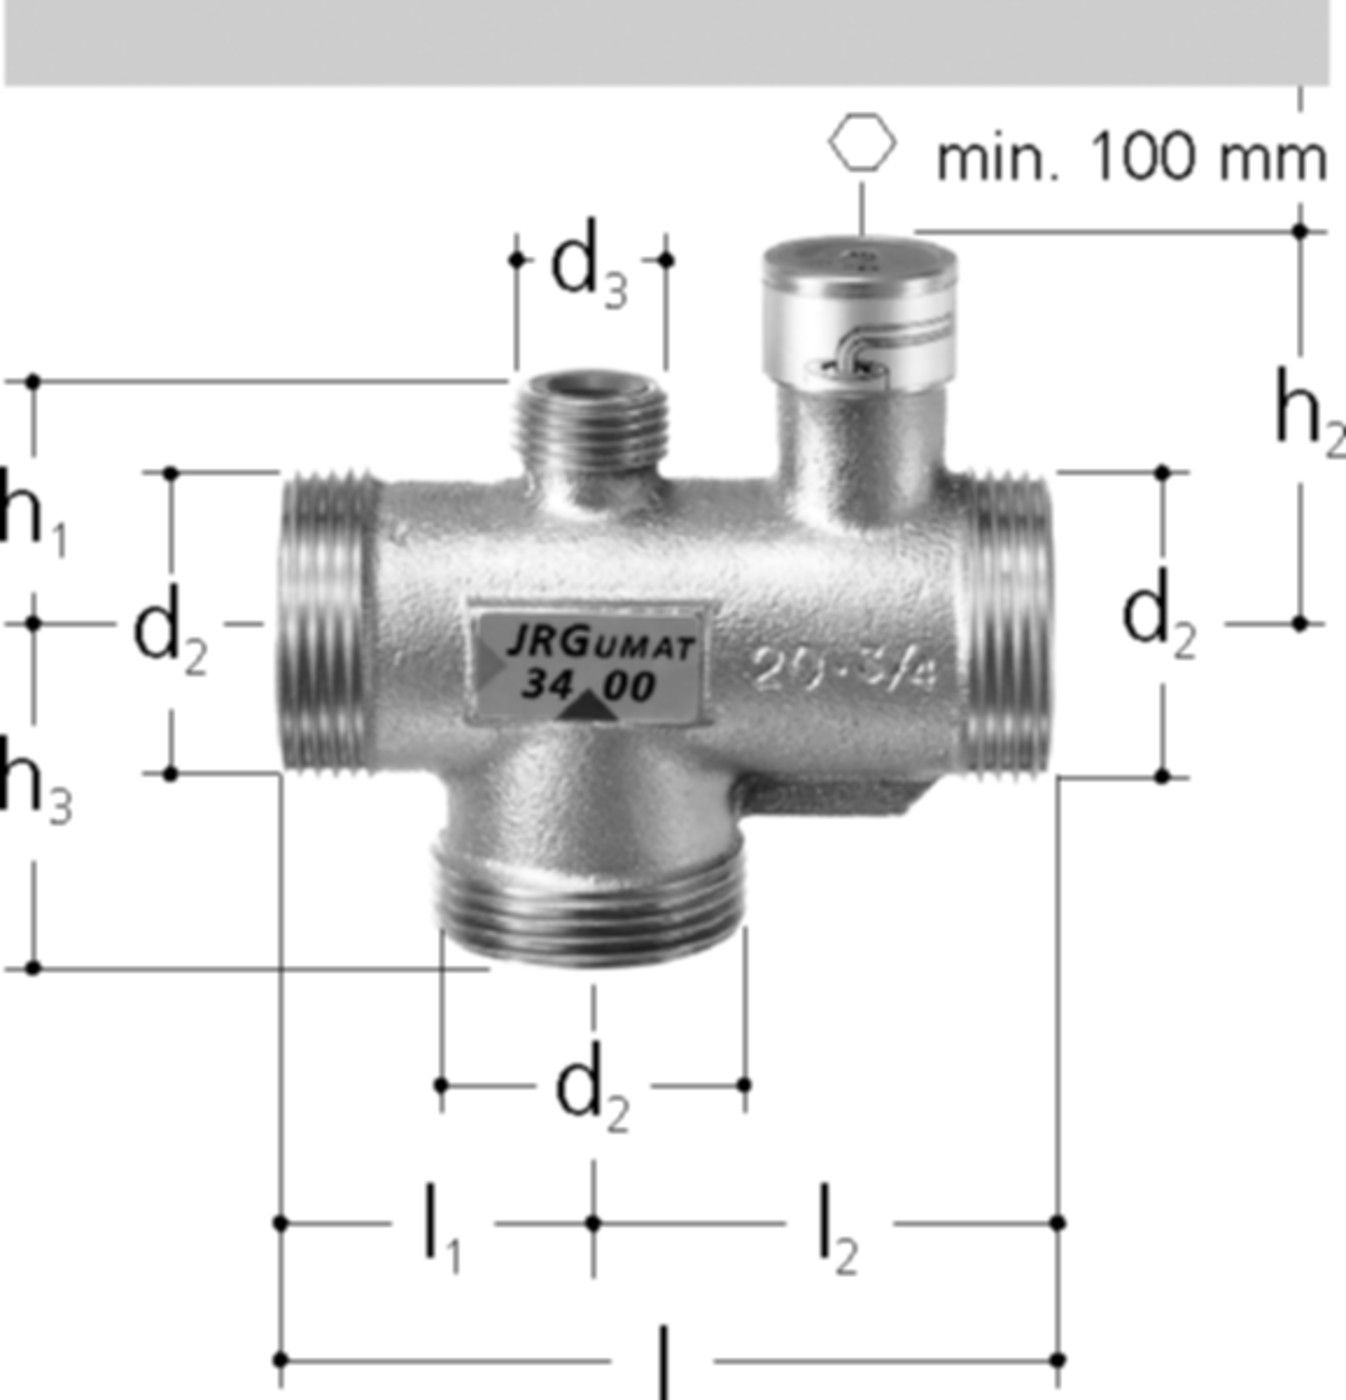 JRGUMAT Thermomischer PN 10 1/2" DN 15 25°C 3400.910 - JRG Armaturen